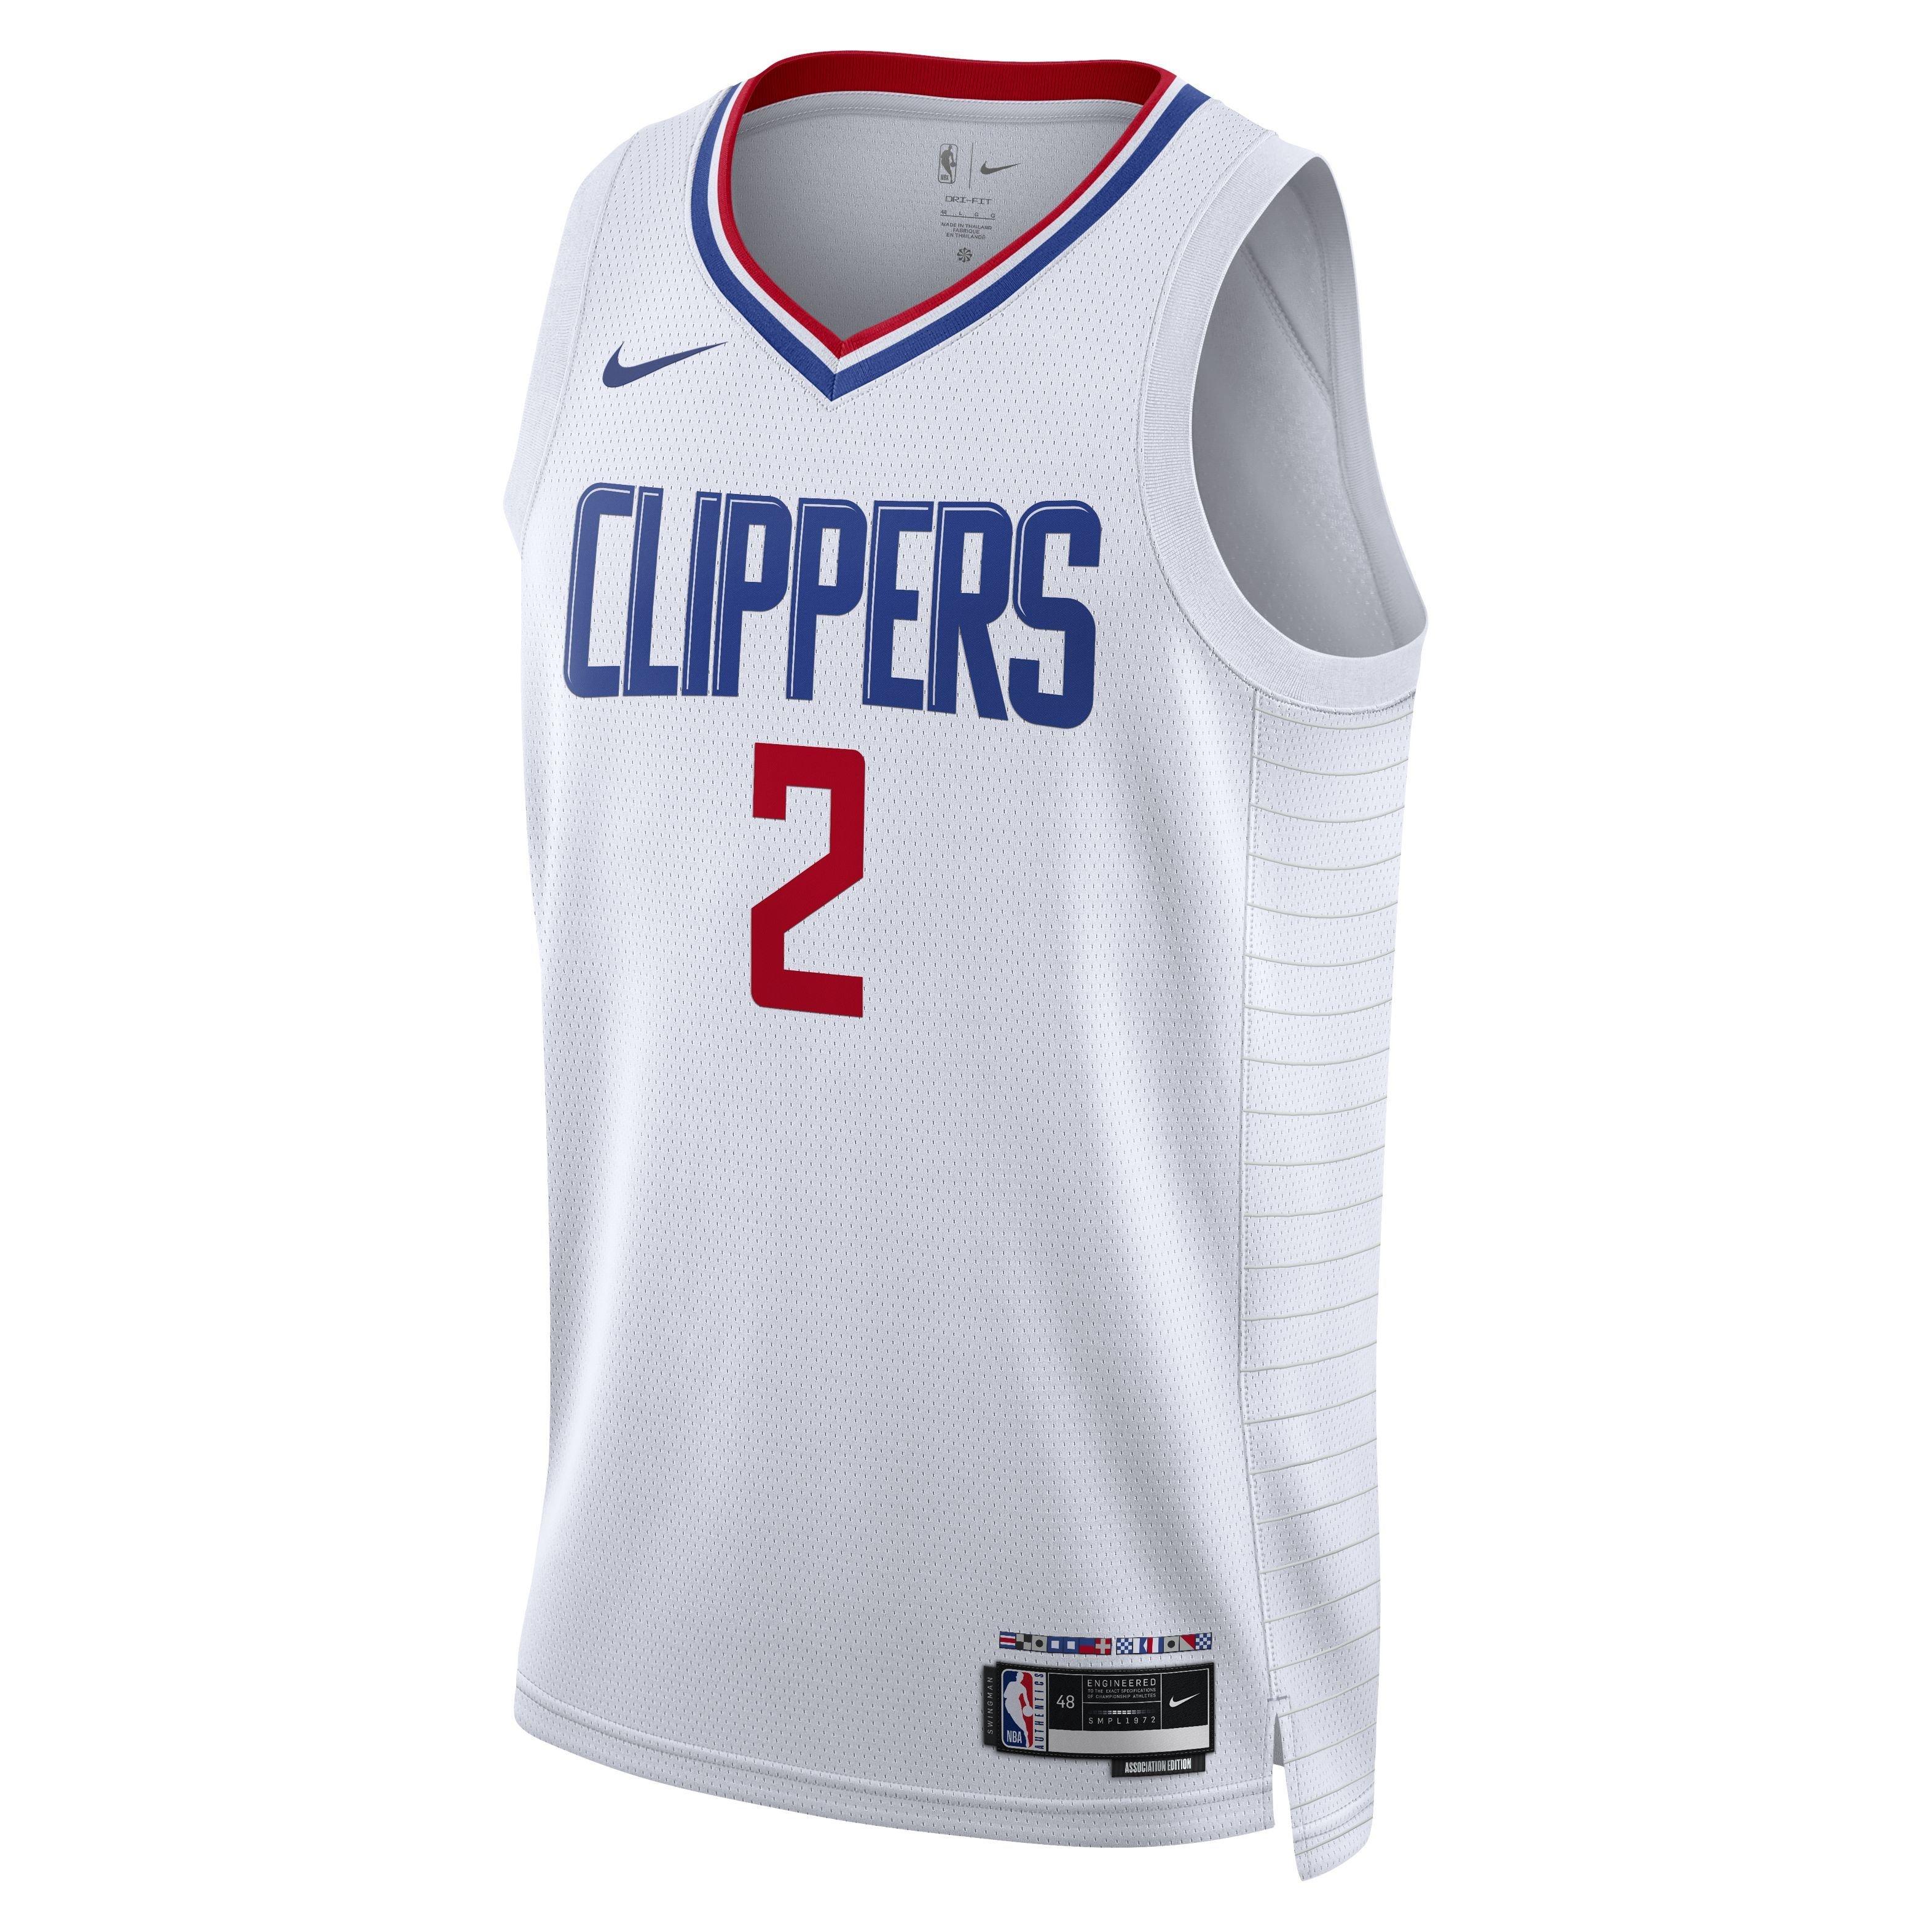 Nike, Shirts, La Clippers 2 Leonard Stitched Jersey Nike Blue White Jersey  Nba